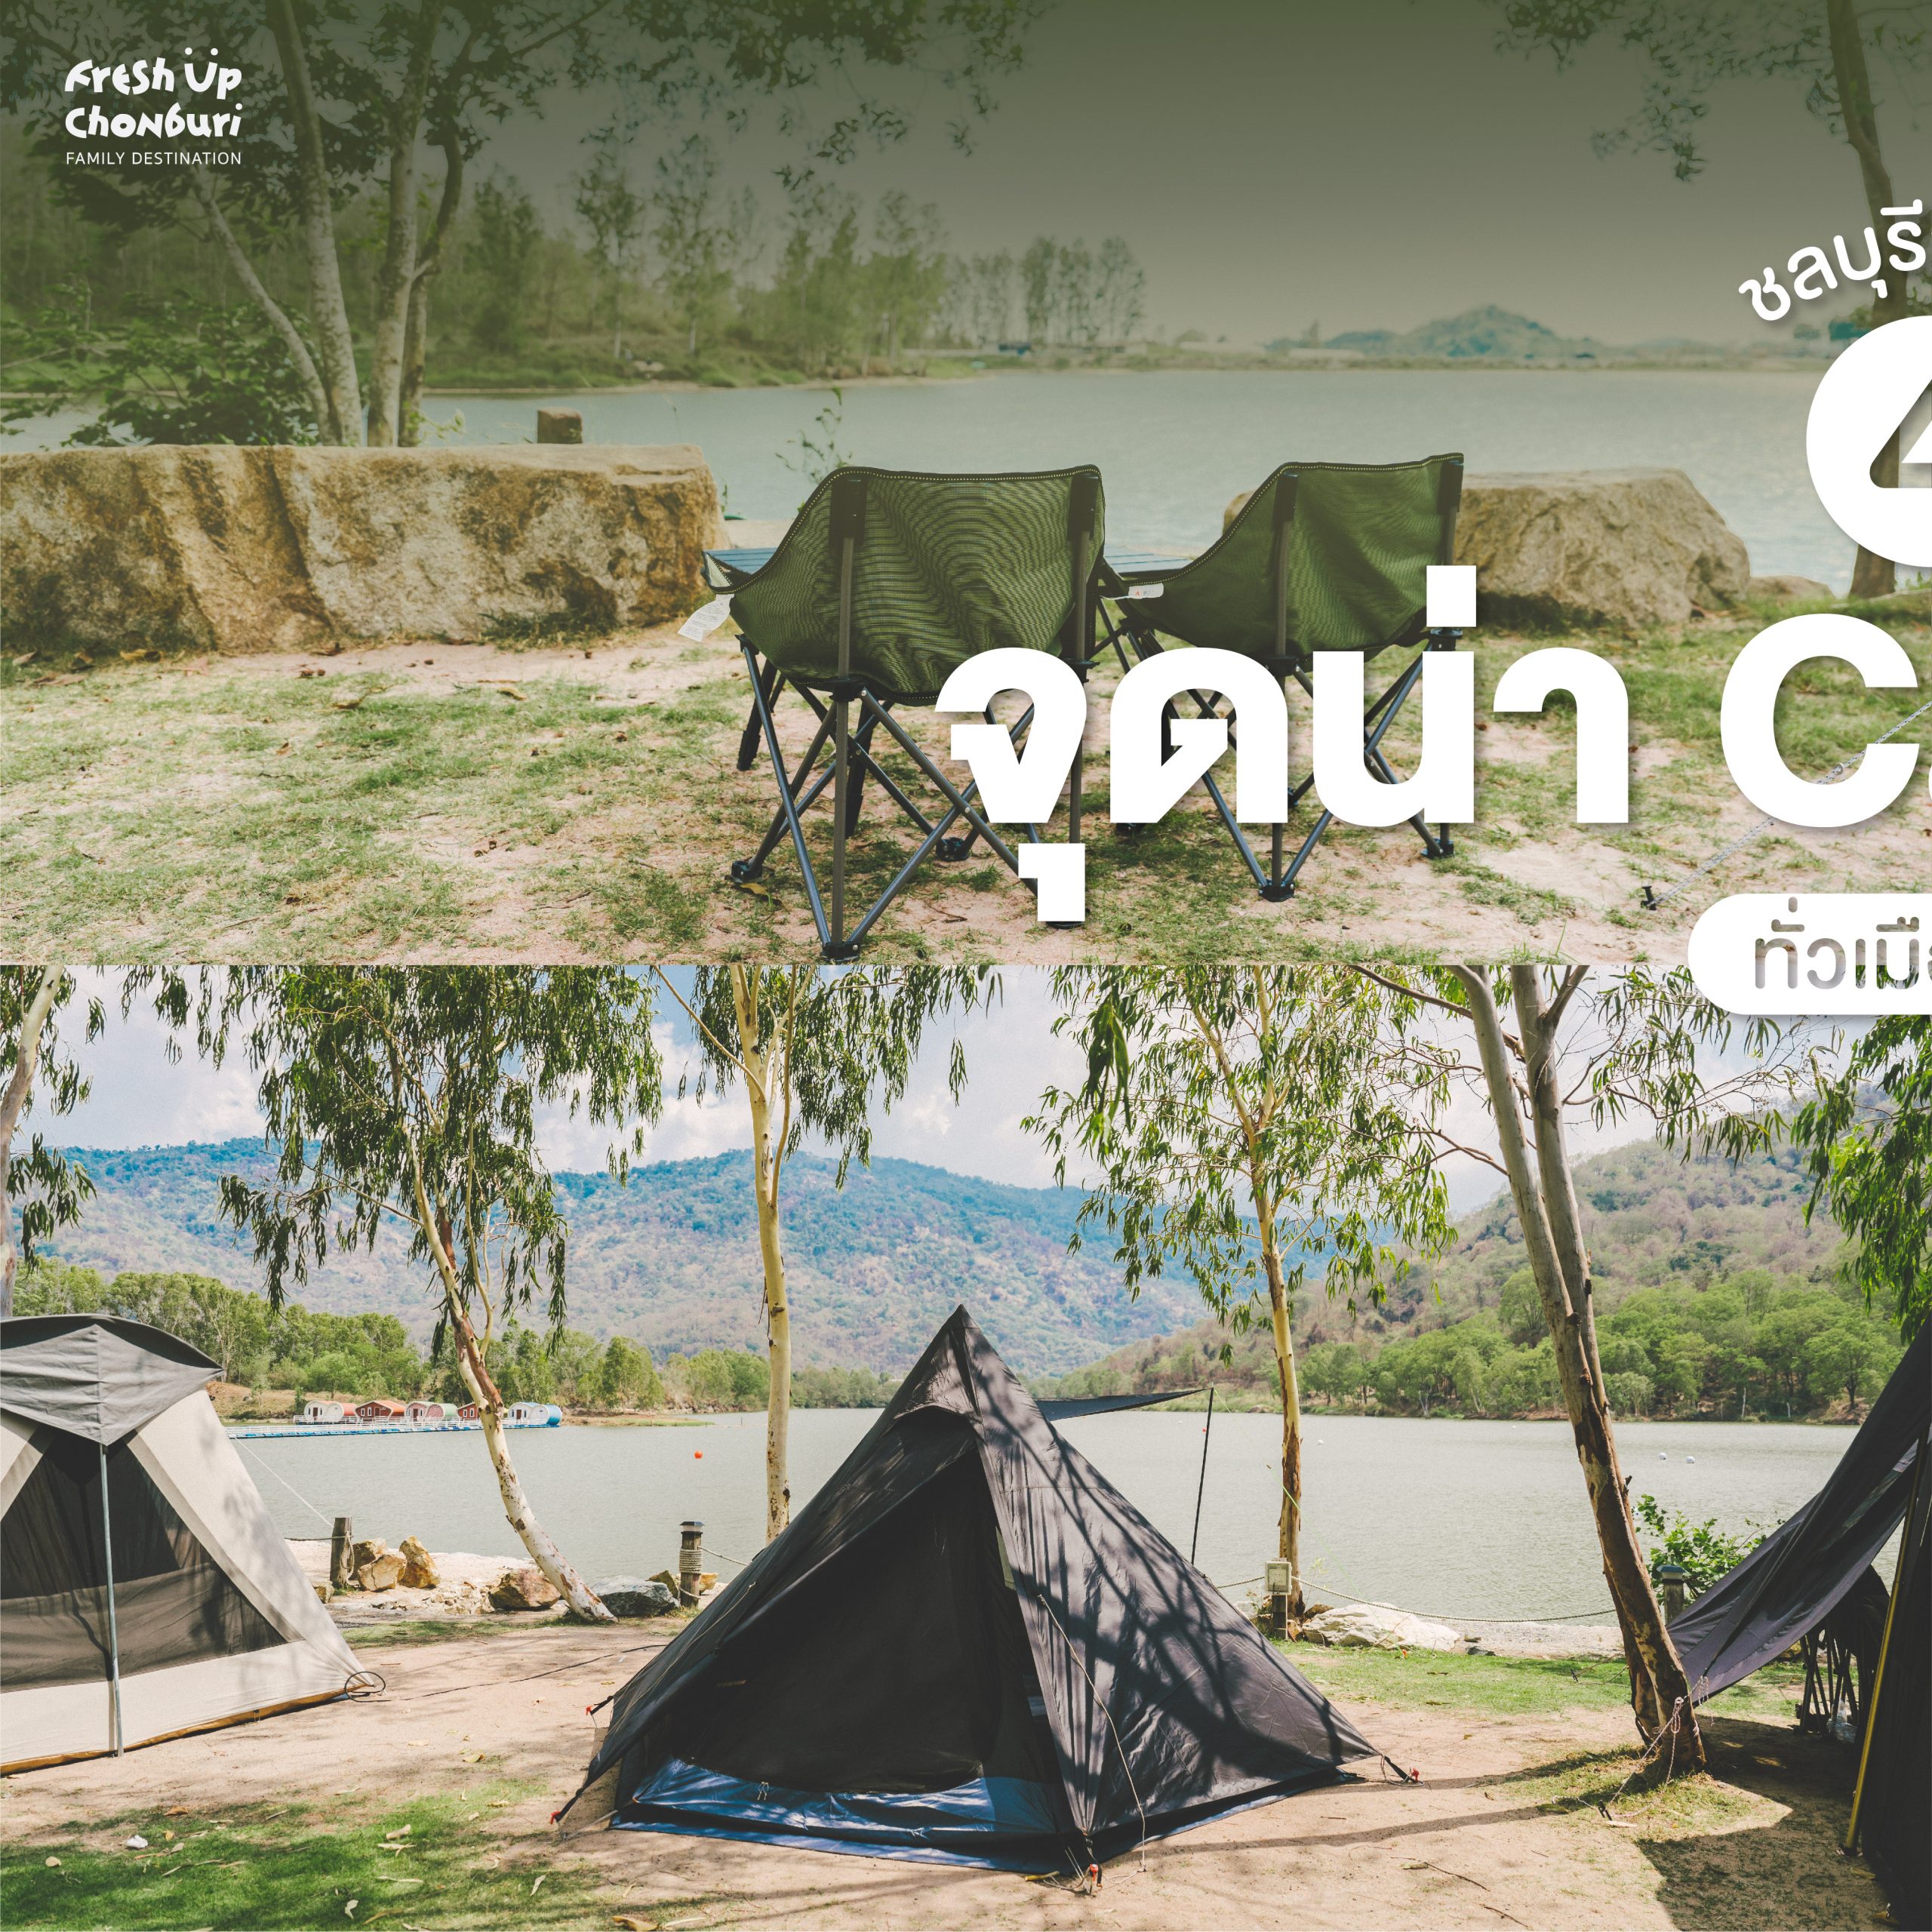 #ChonChecklist ชลบุรีก็มีเขา 4 จุดน่า Camping เมืองชล